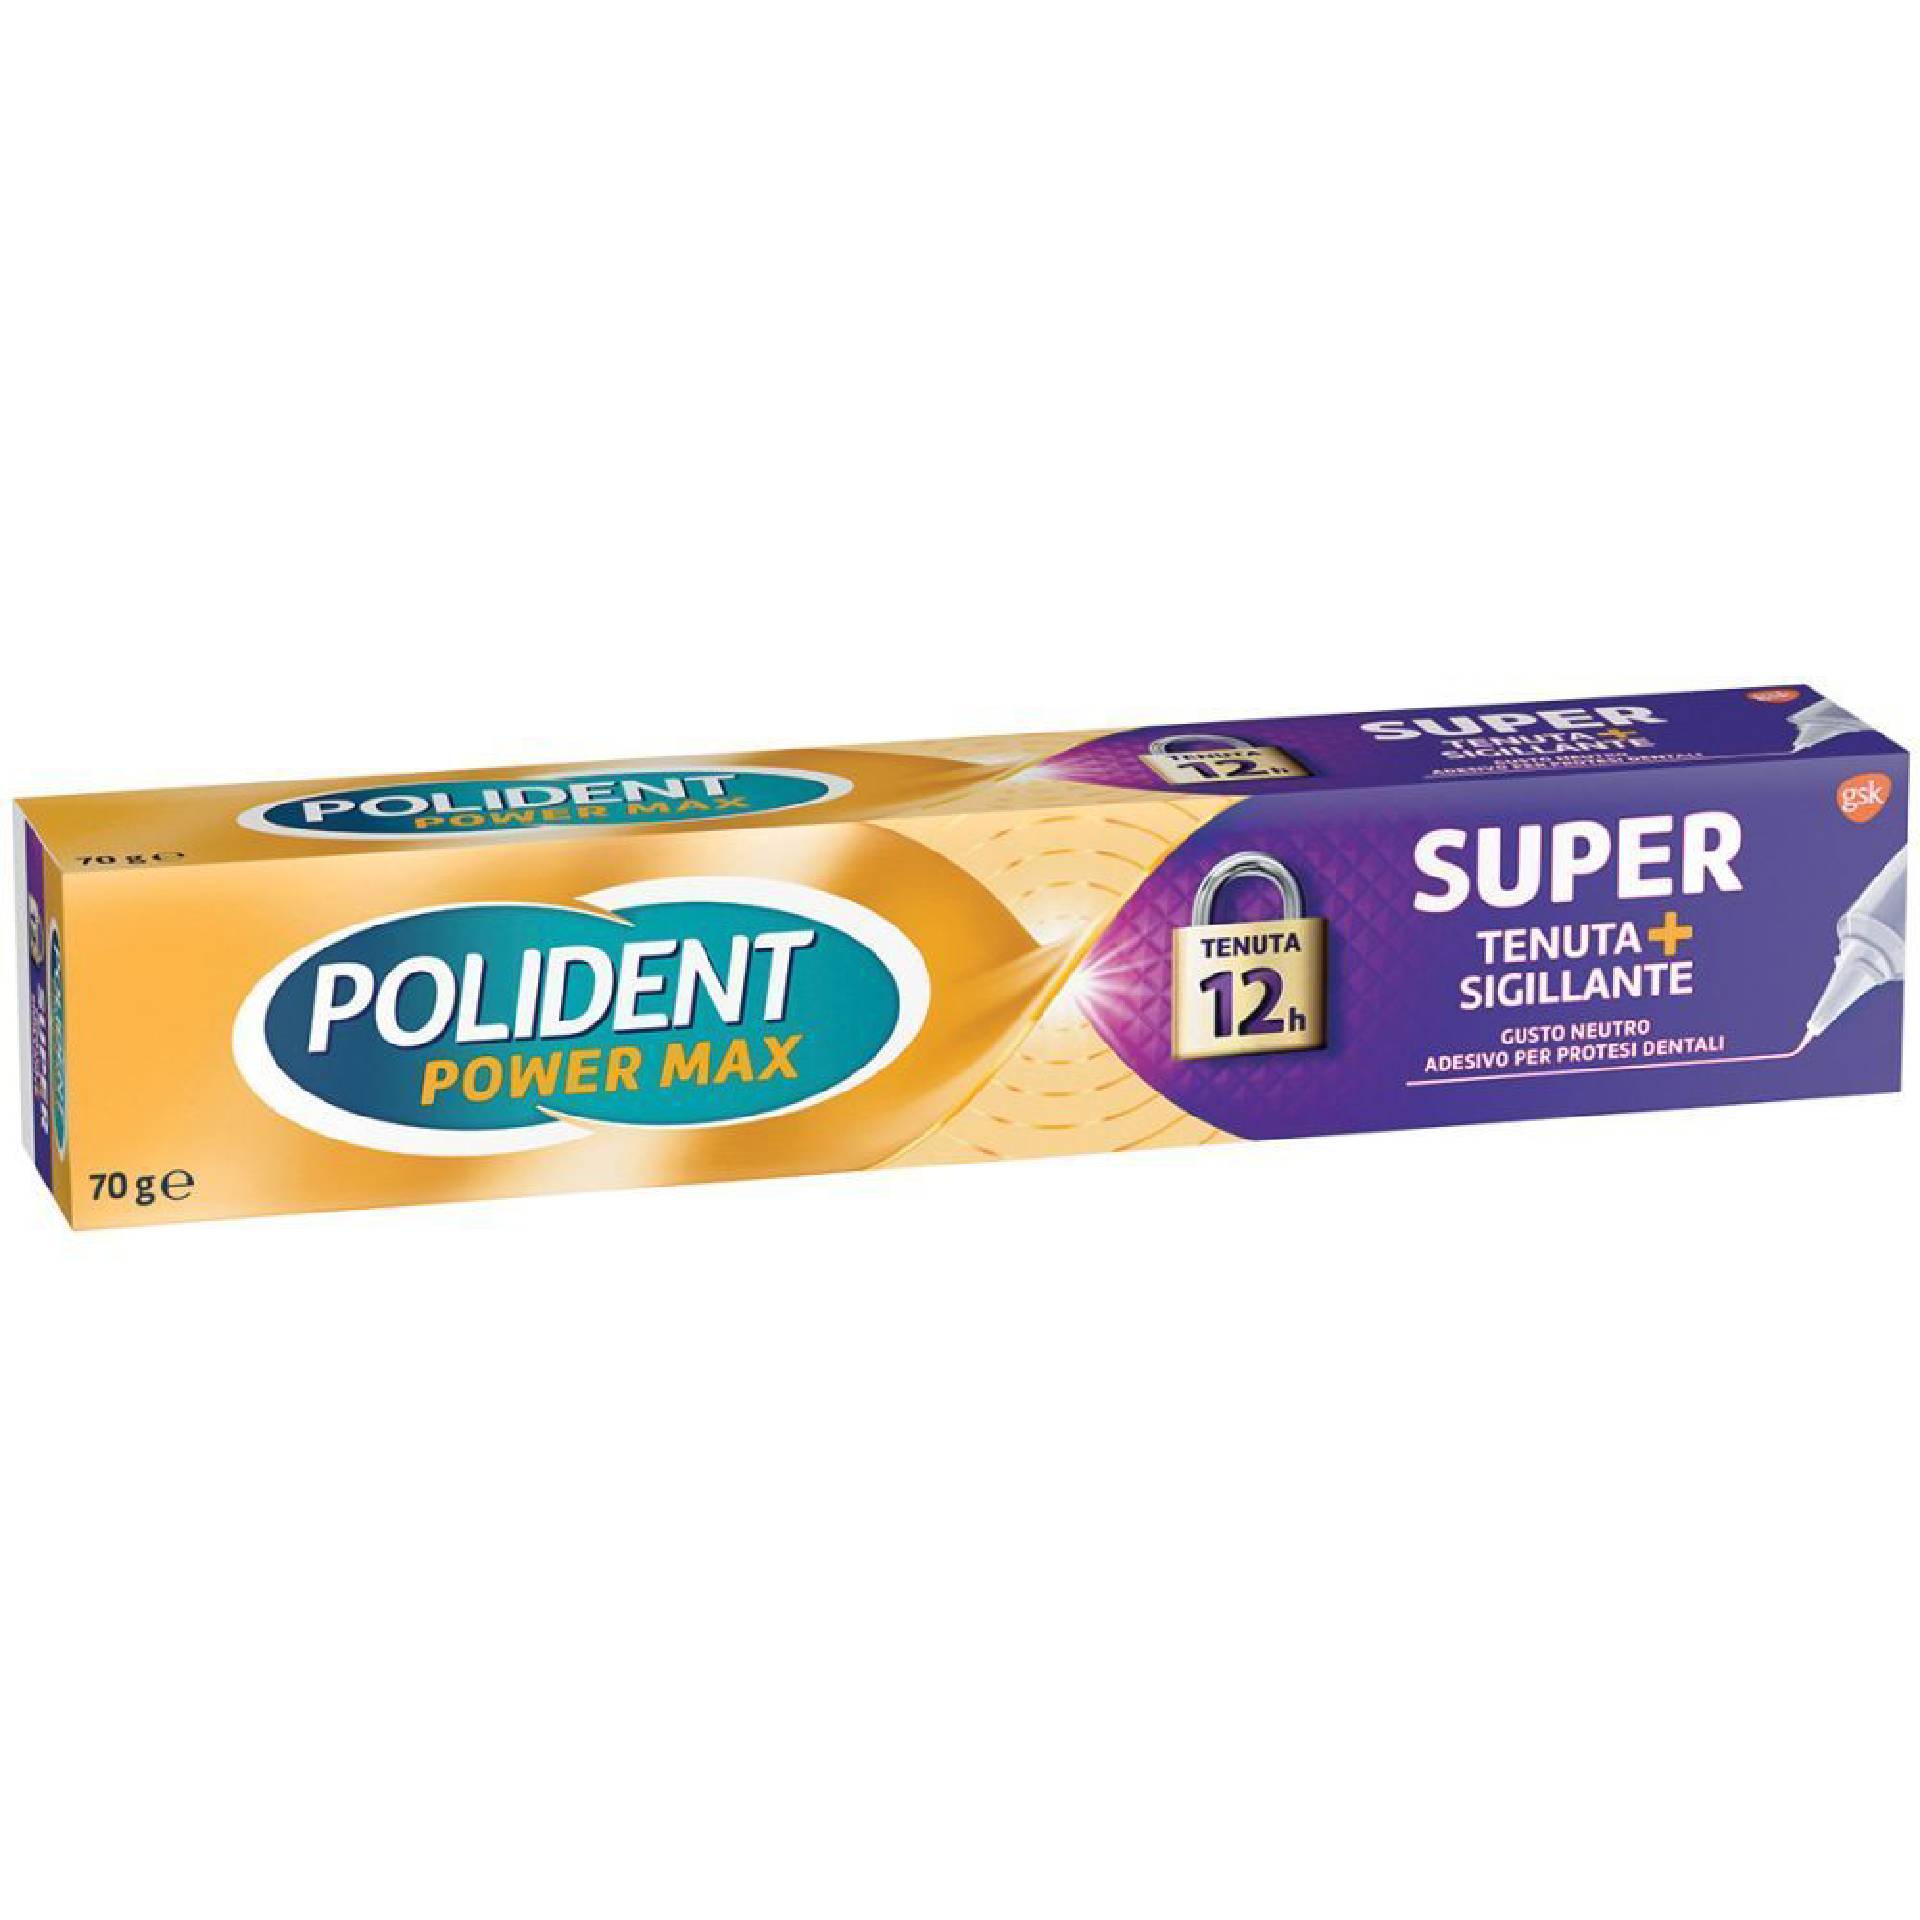 polident super tenuta + comfort adesivo per protesi dentale tenuta giornaliera gusto neutro 70g